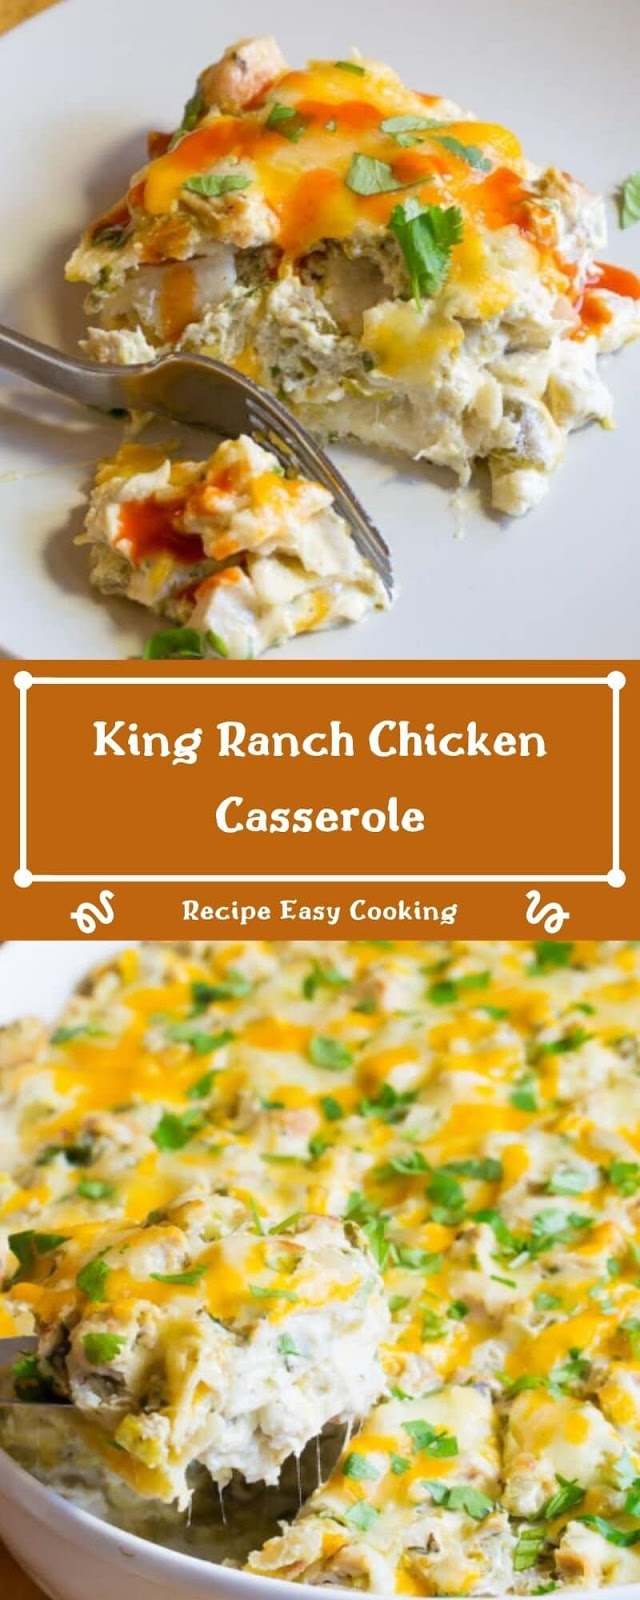 King Ranch Chicken Casserole